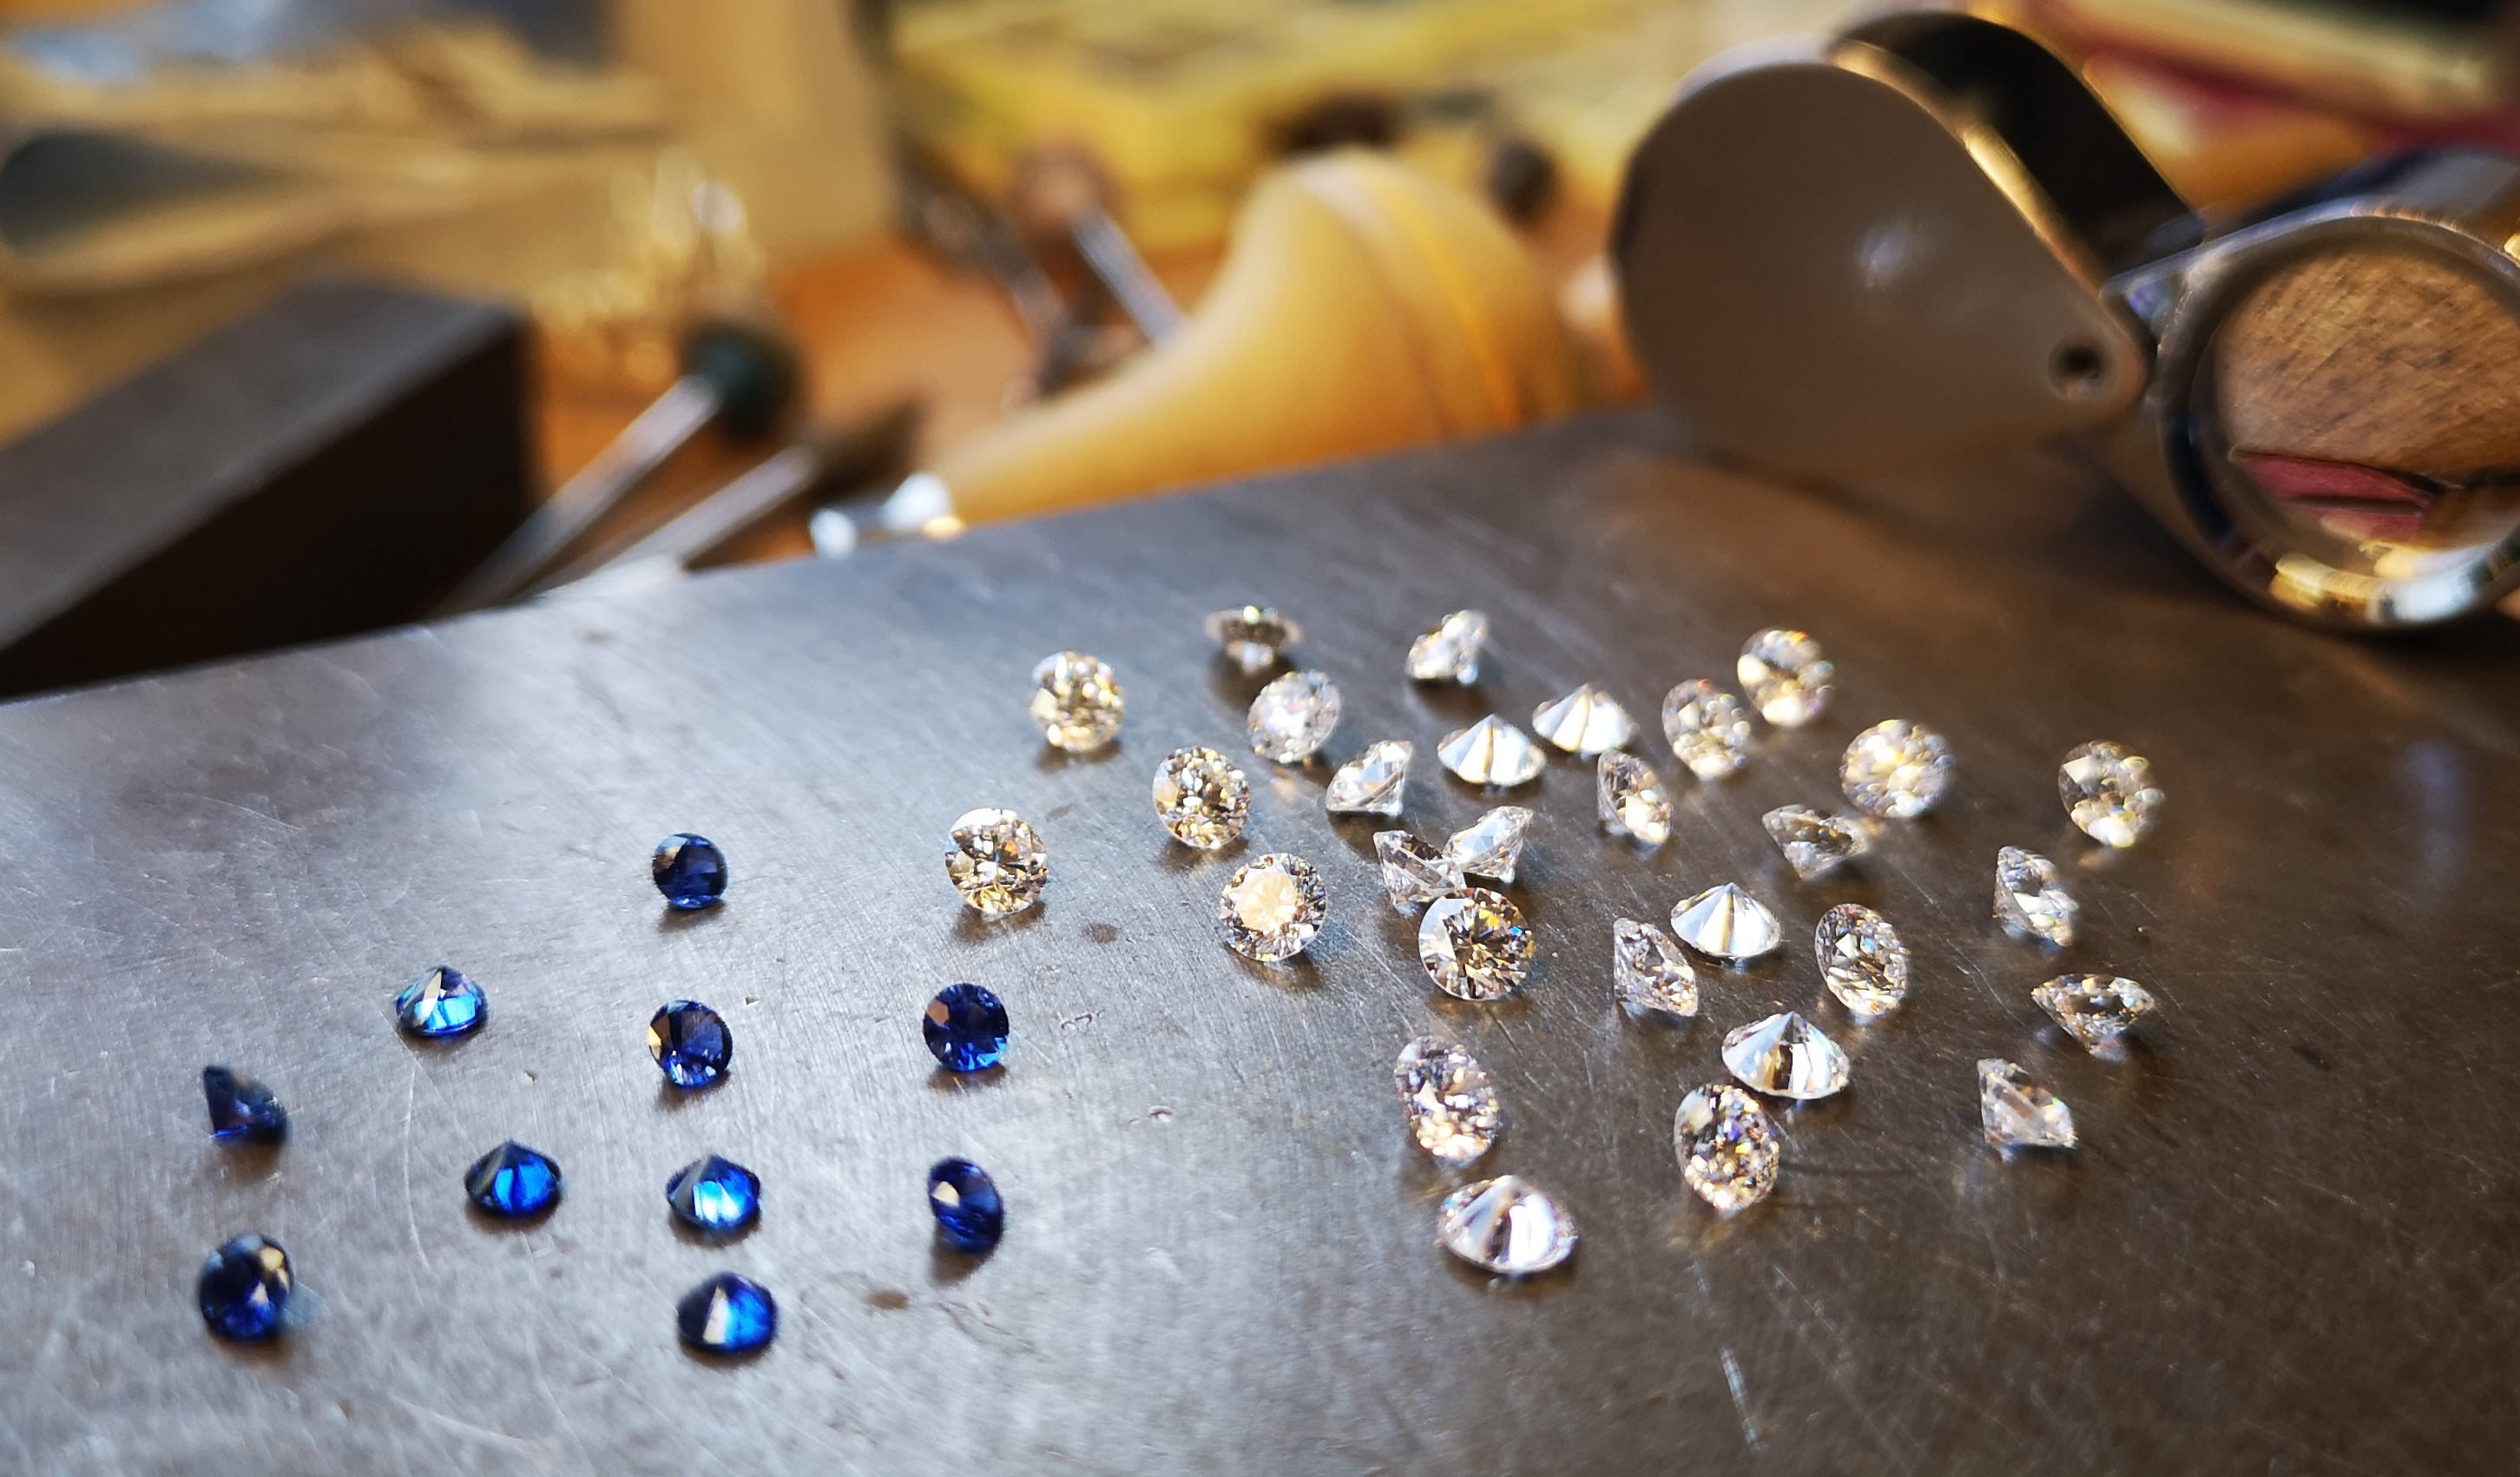 Gemstone Jewelry: Find Your Favorite Gem